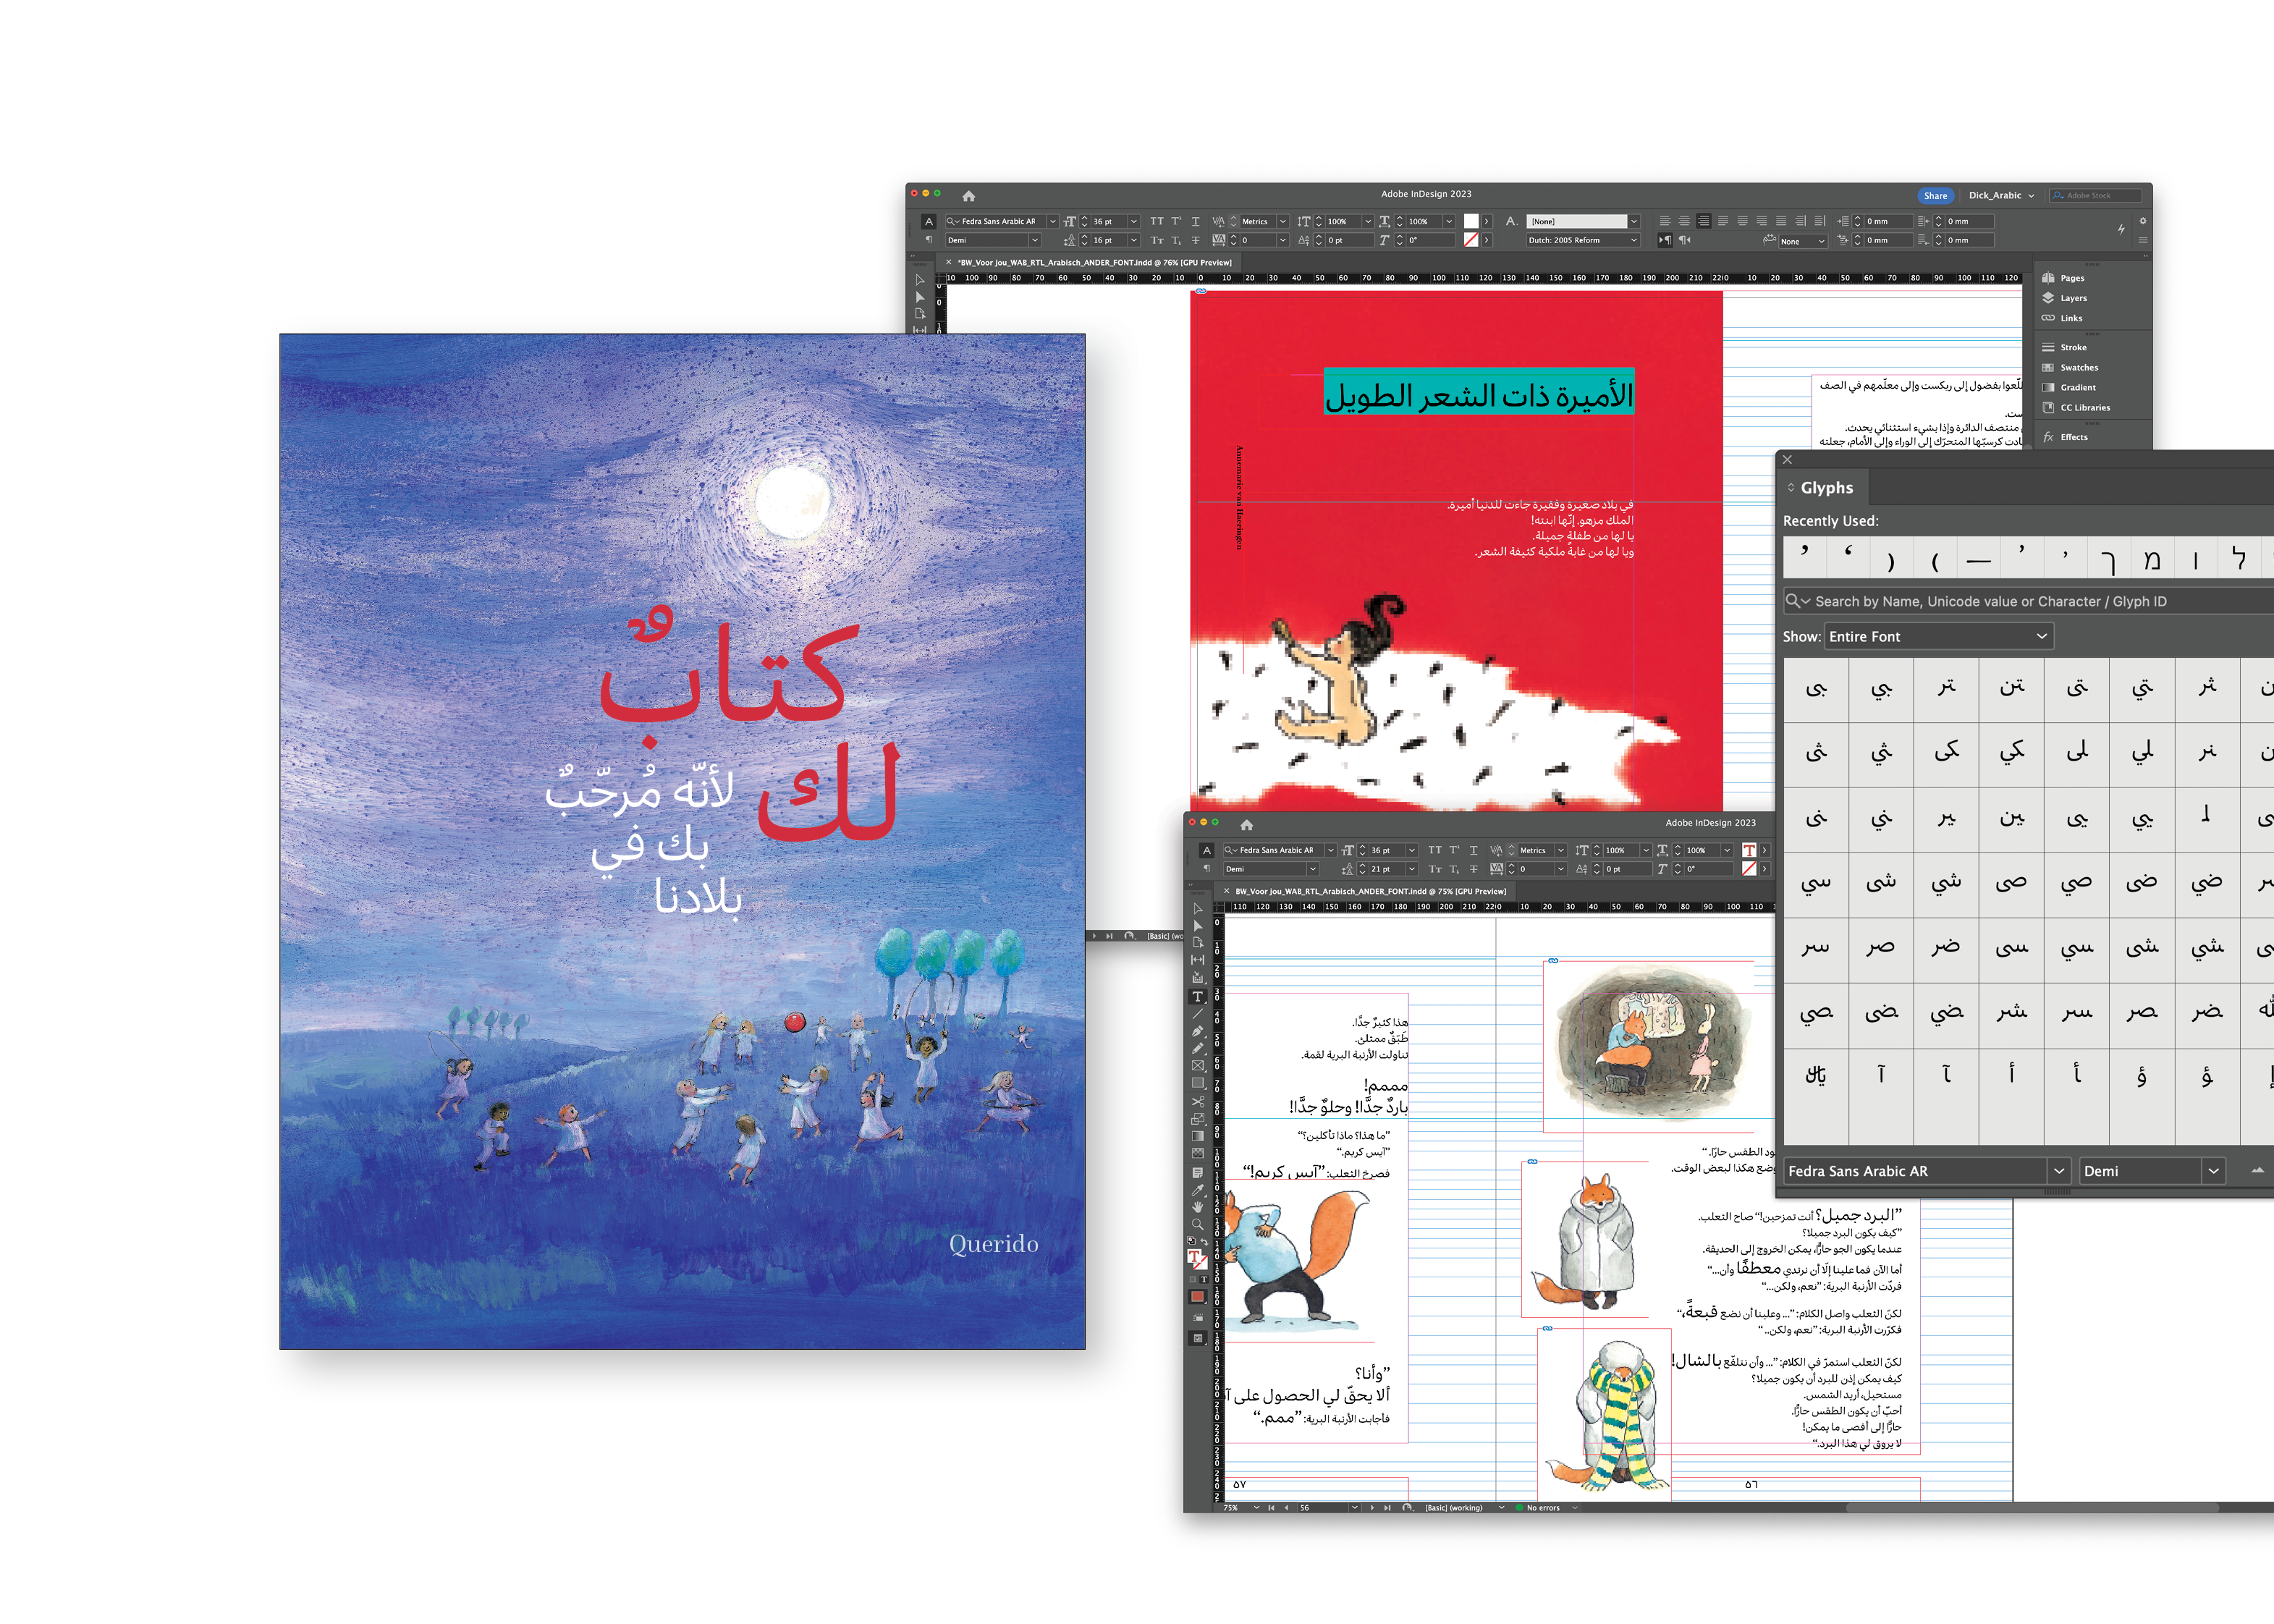 Arabisch zetwerk & lay-out / Kinderboek Querido